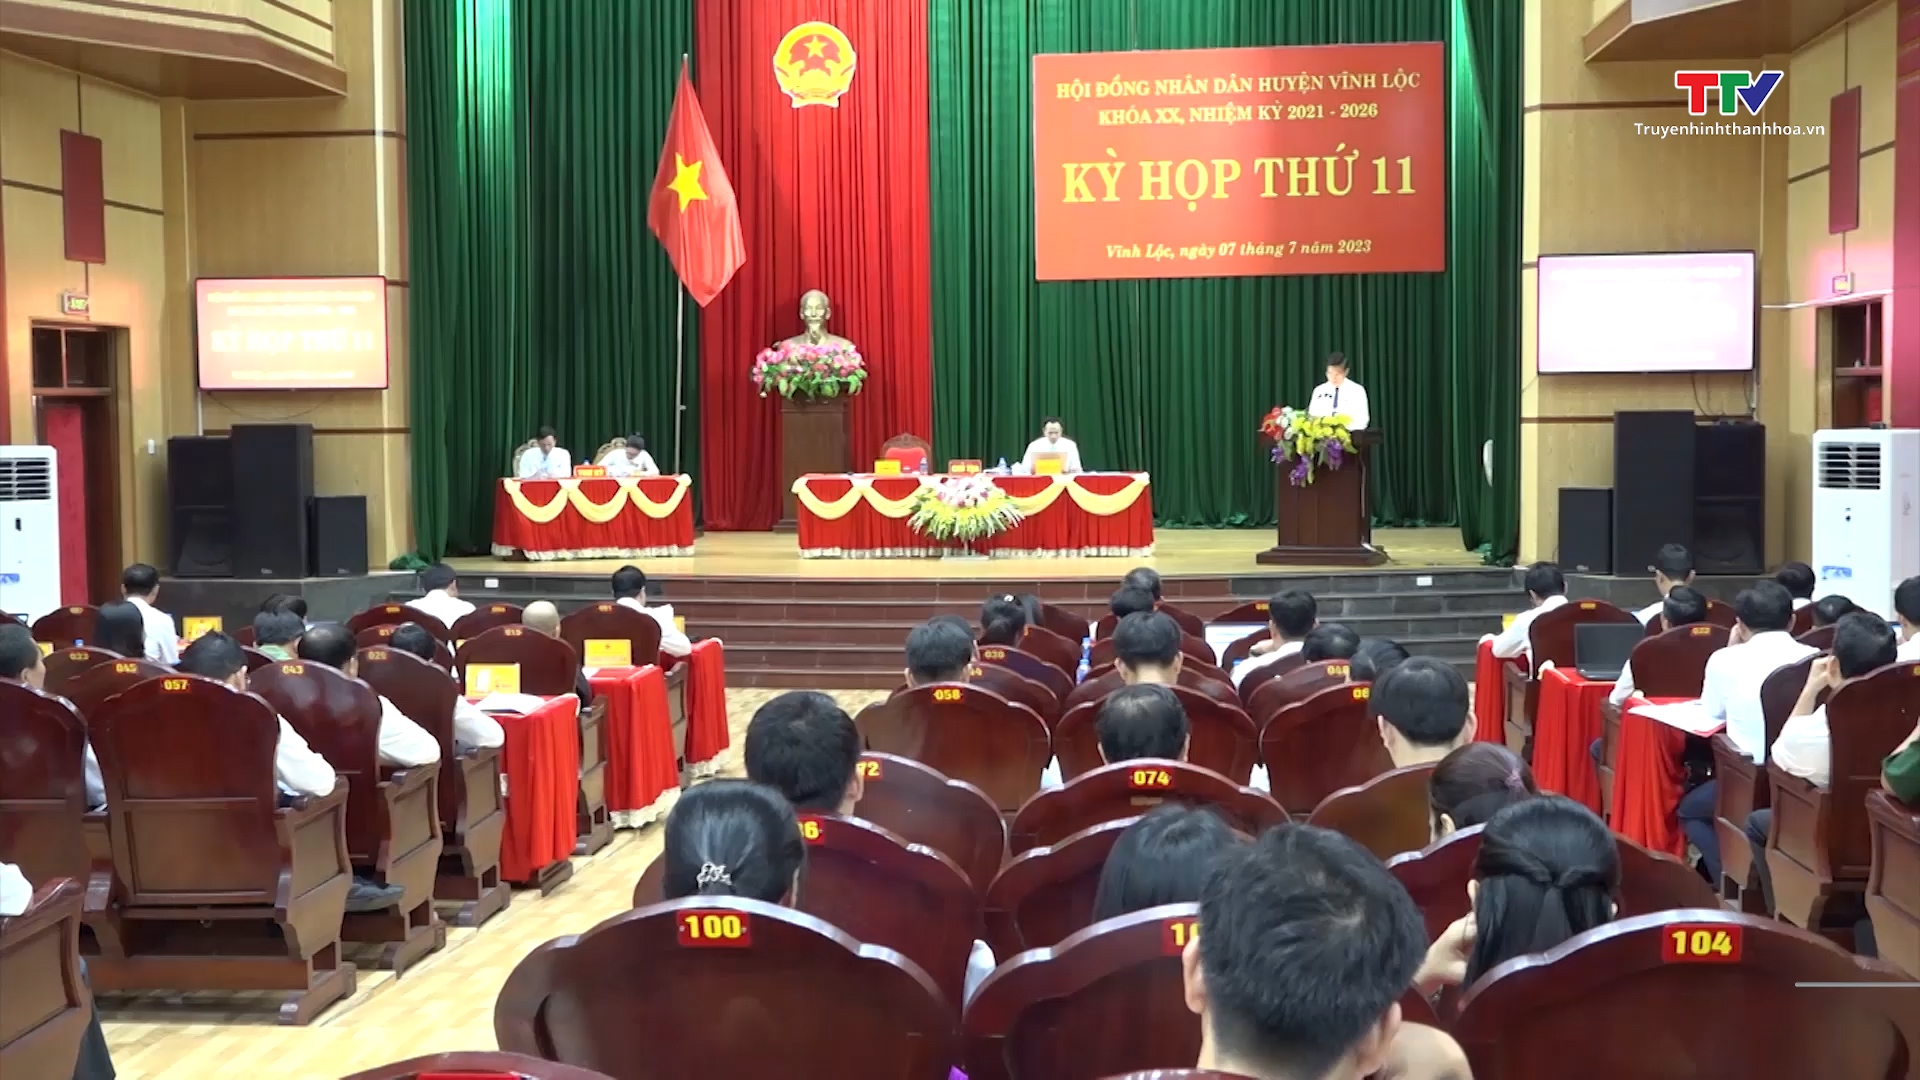 Hội đồng nhân dân huyện Vĩnh Lộc tổ chức Kỳ họp thứ 11, nhiệm kỳ 2021 - 2026 - Ảnh 2.